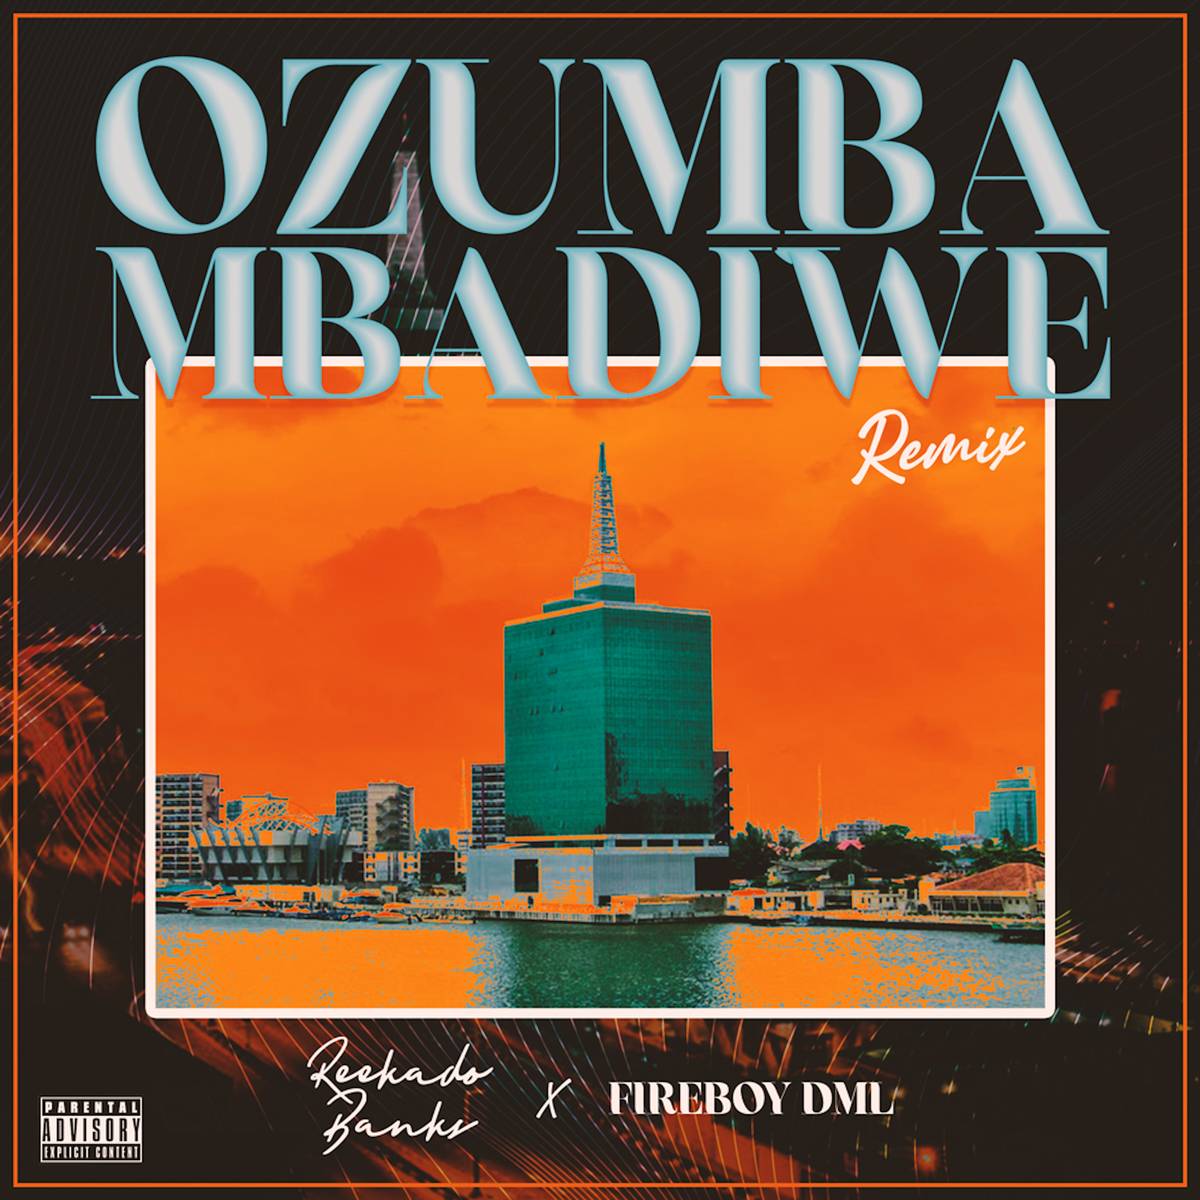 Reekado Banks ft. Fireboy DML - Ozumba Mbadiwe (Remix)